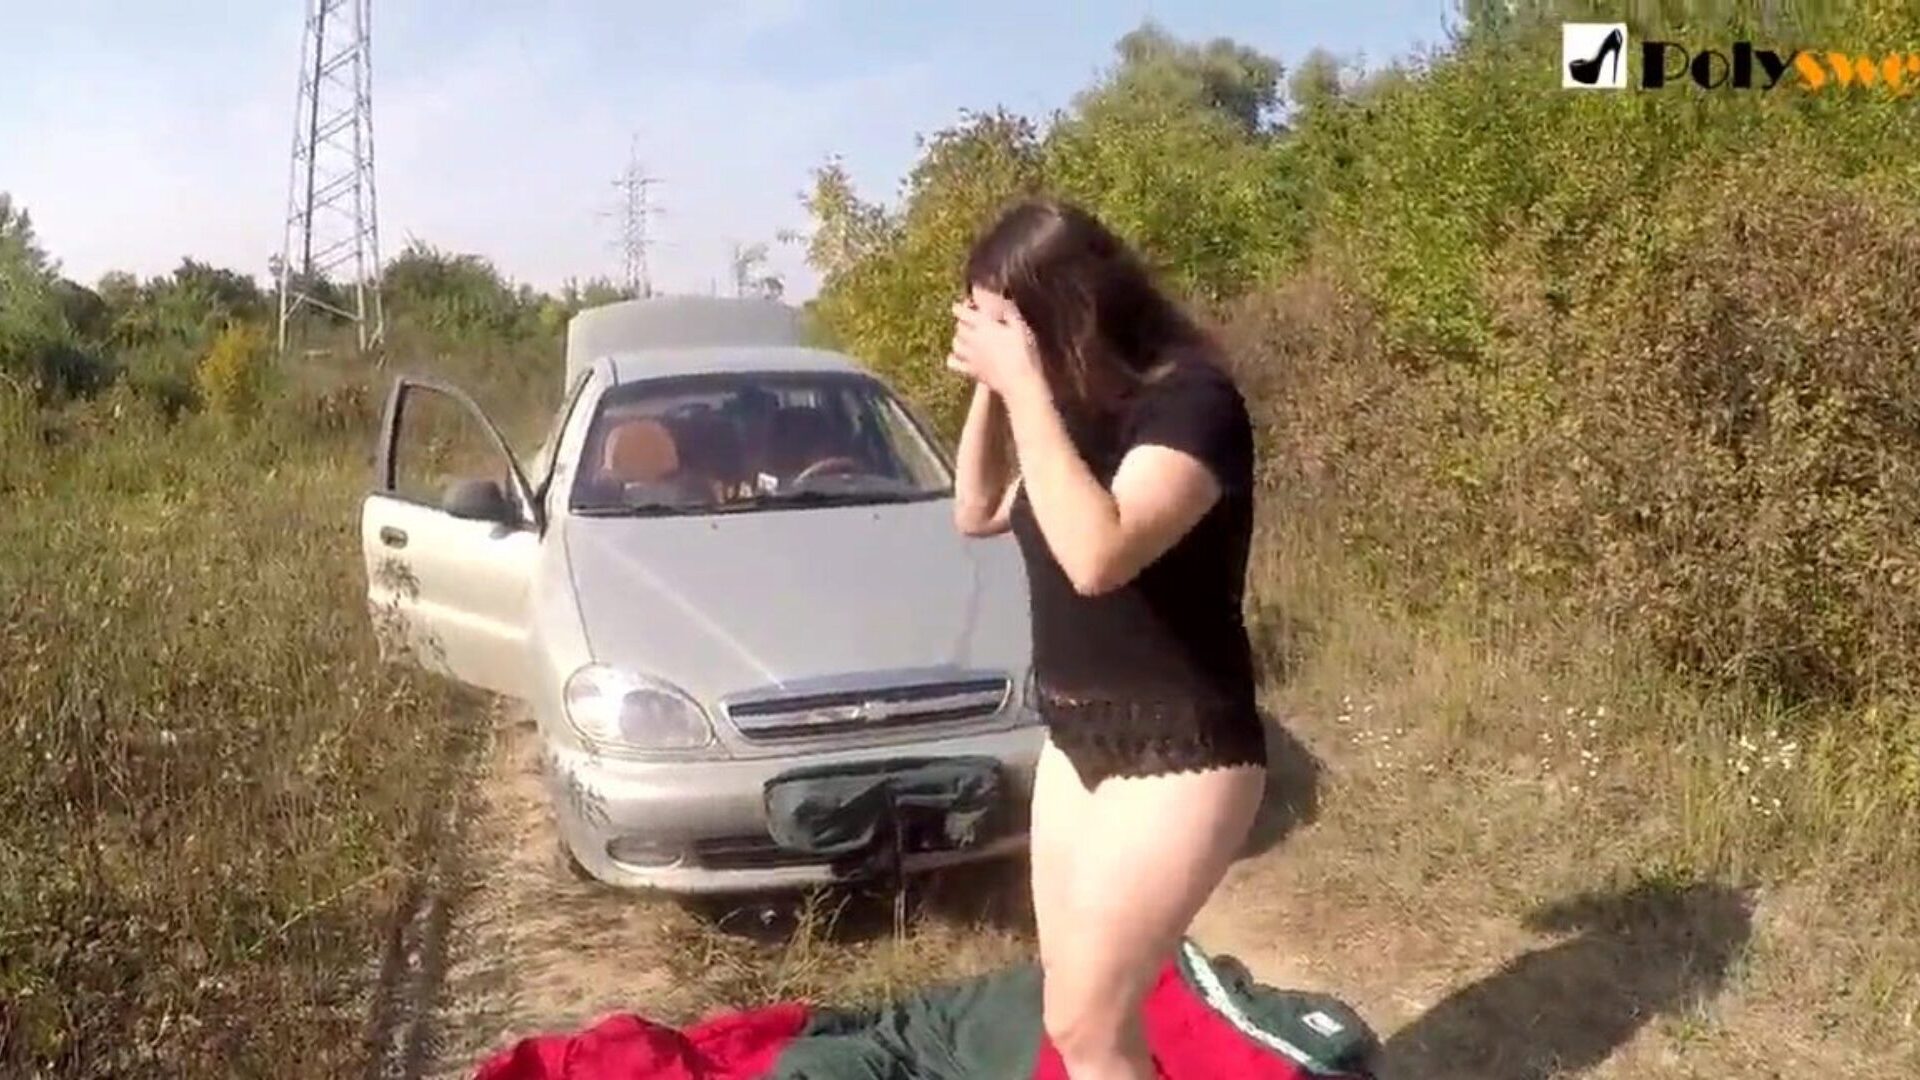 فتاة الاستمناء العام تم القبض علي بواسطة سيارة في بداية الفيديو)